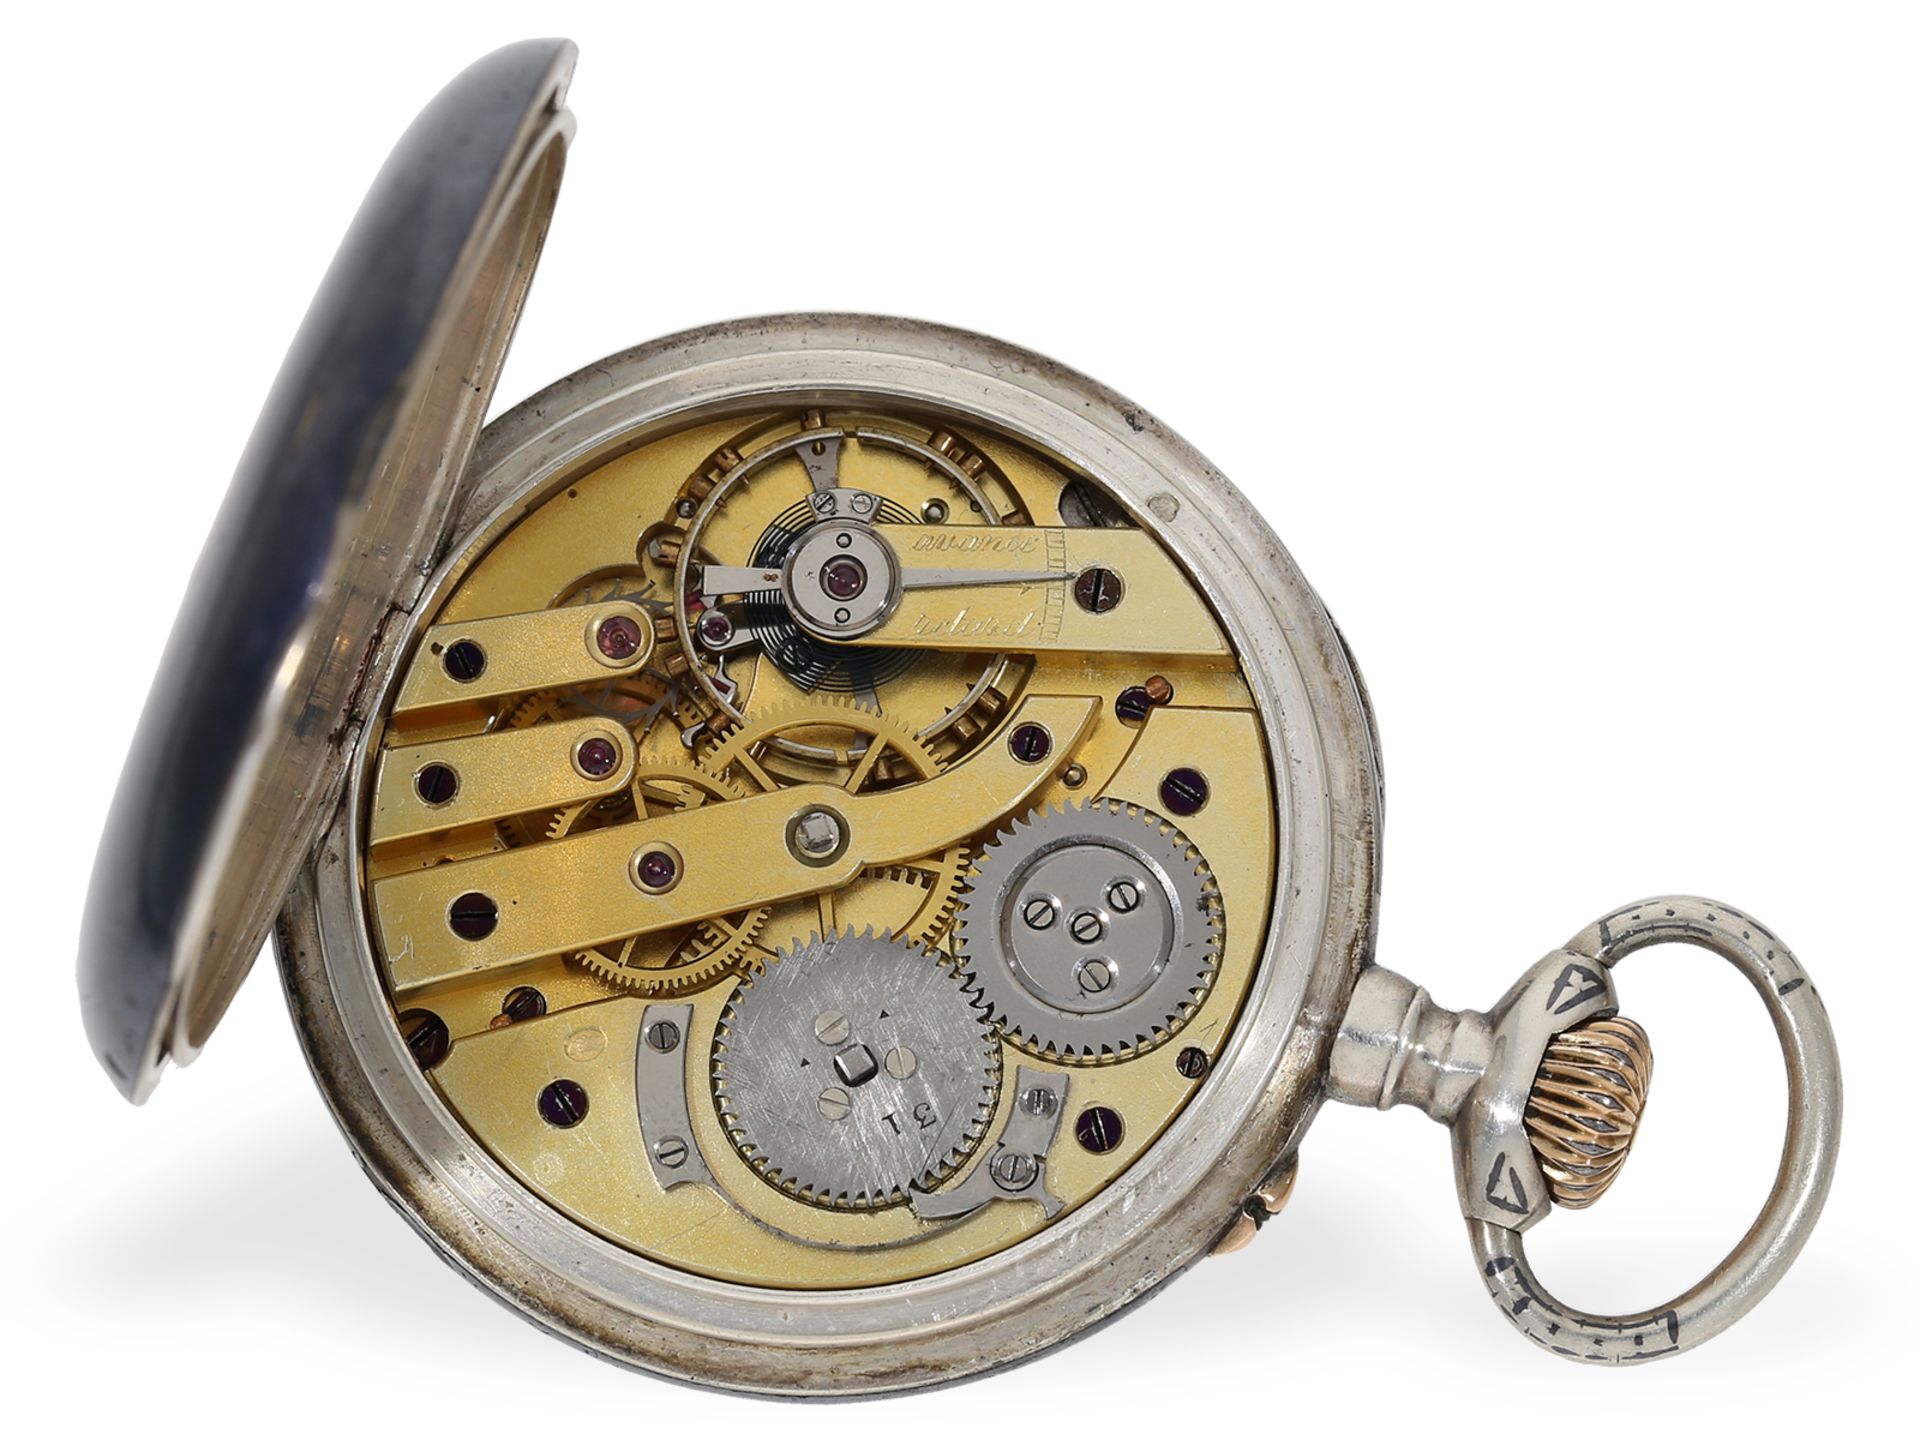 French deck chronometer, L'Observatoire de Besançon, Charpentier, Horloger de la Marine - Image 2 of 6